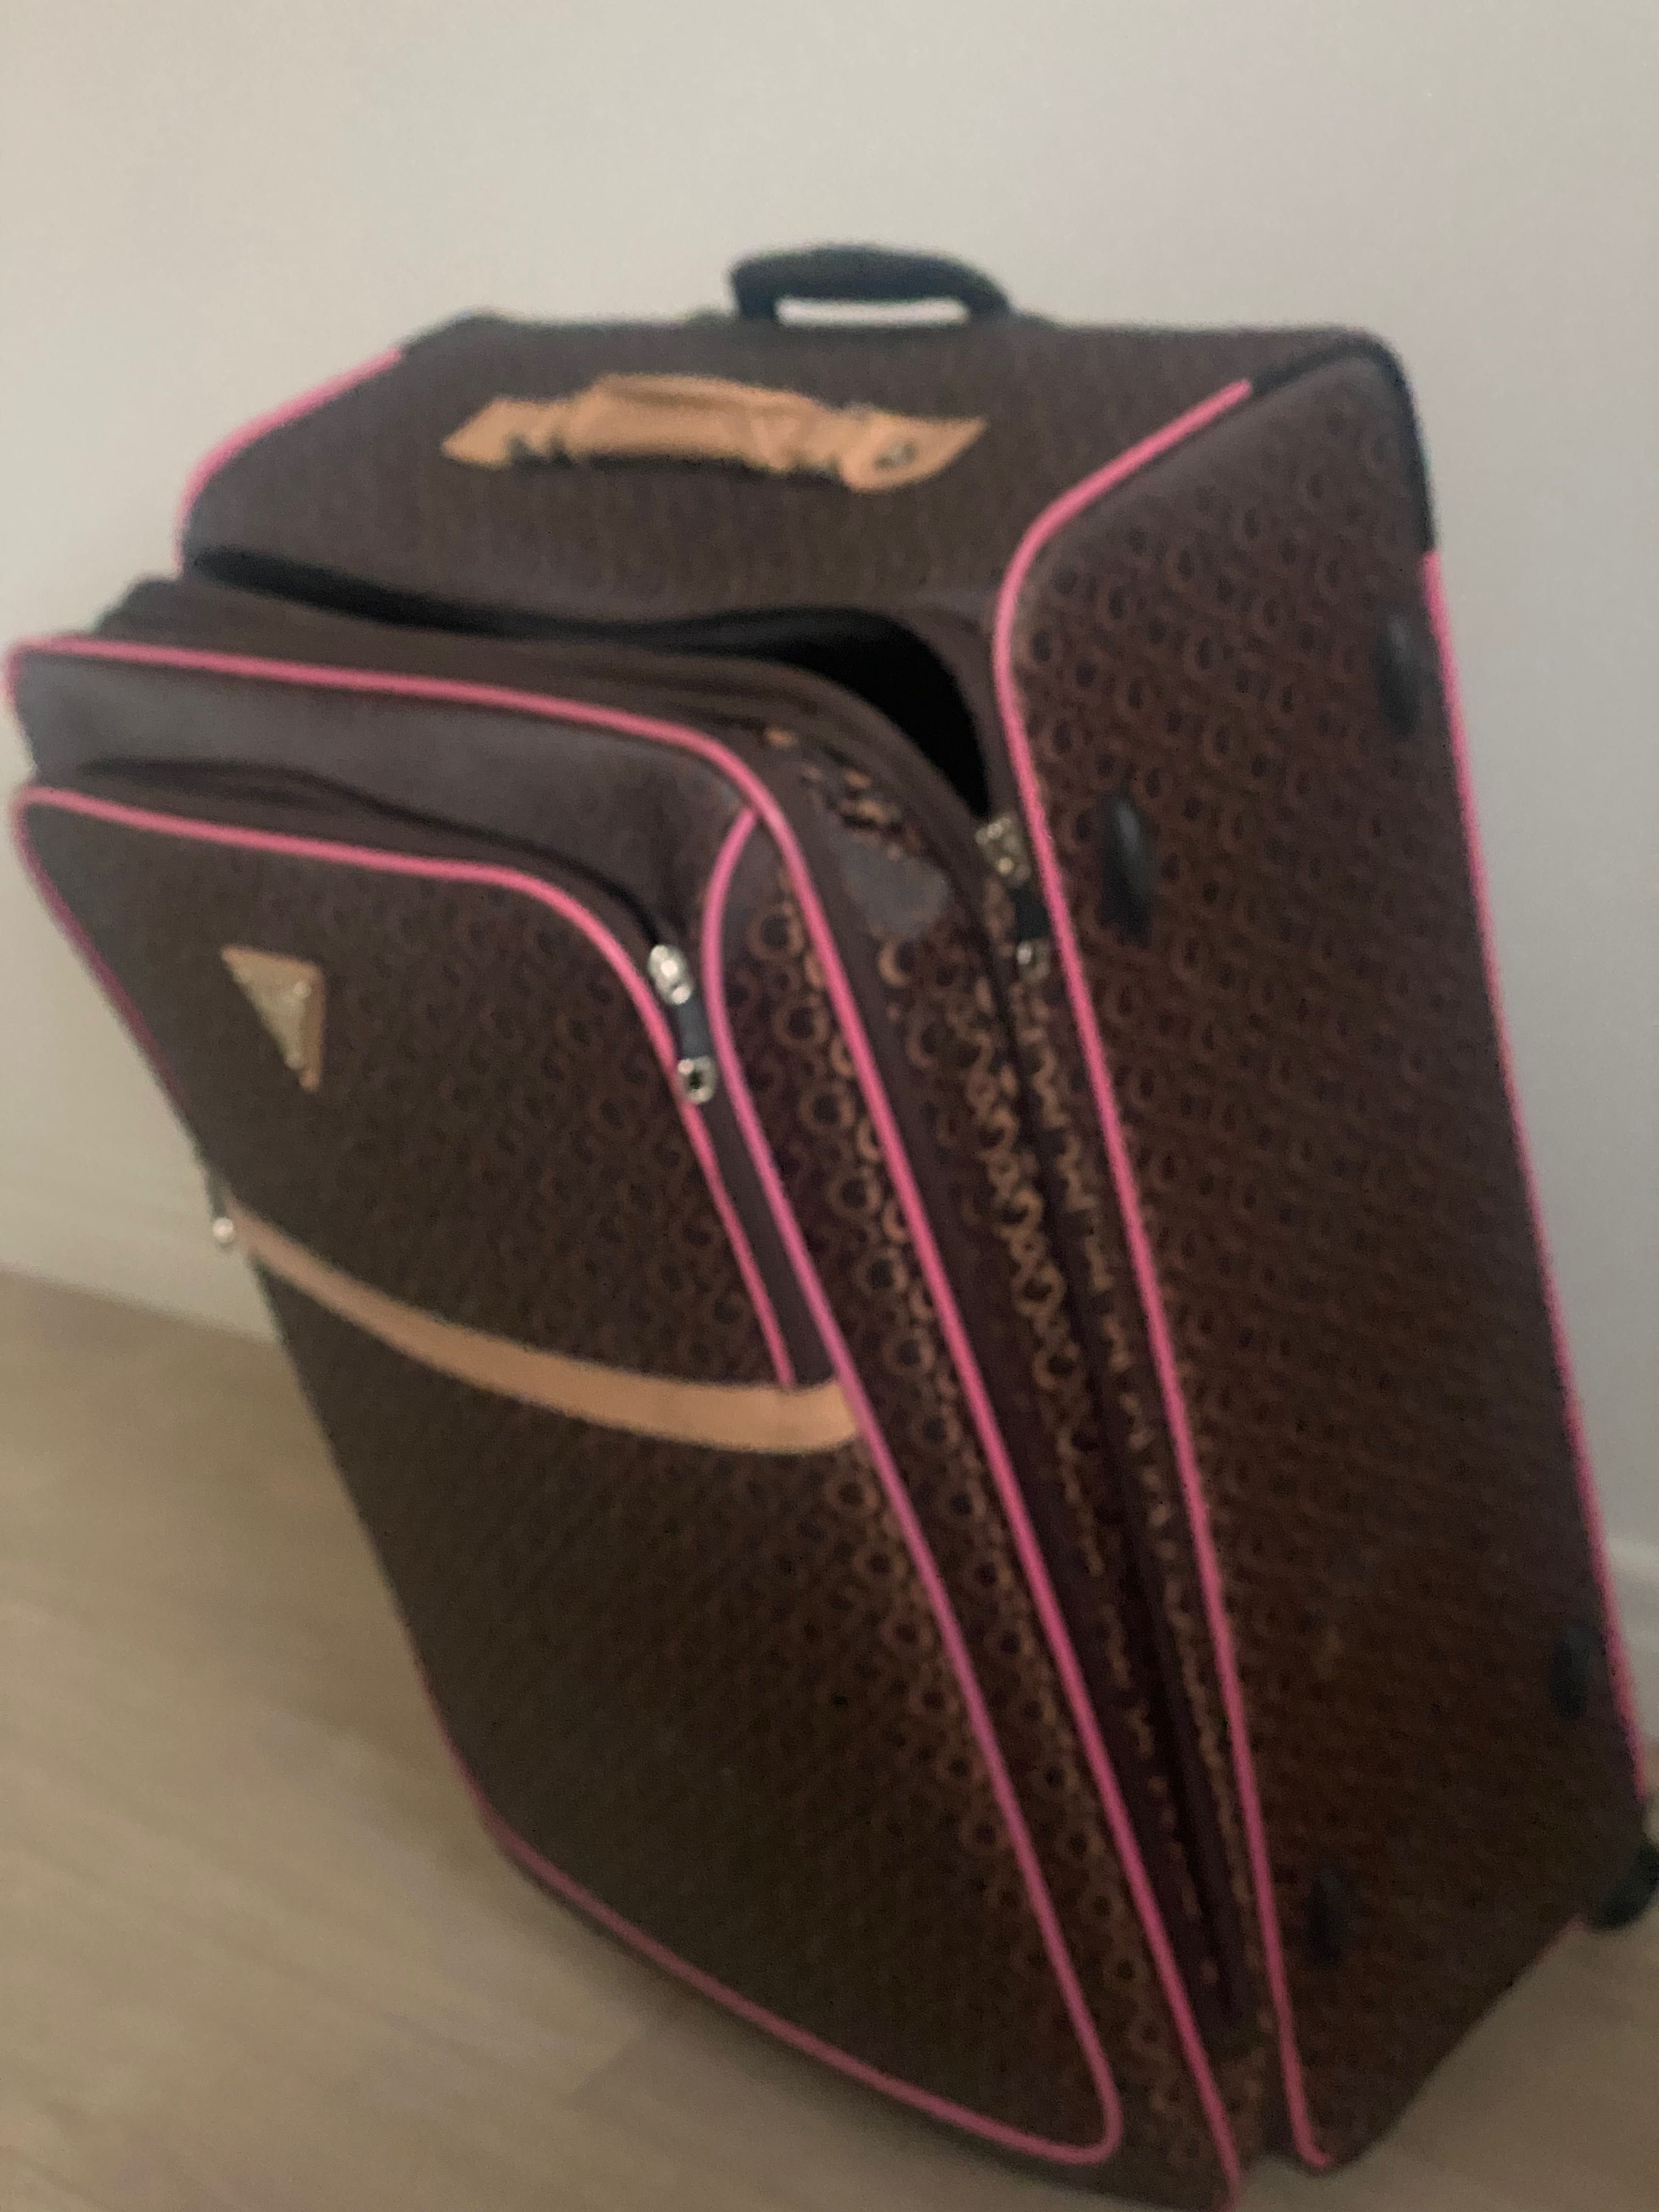 Bardzo duża walizka Guess do luku bagażowego 70x 60 cm bez kółek